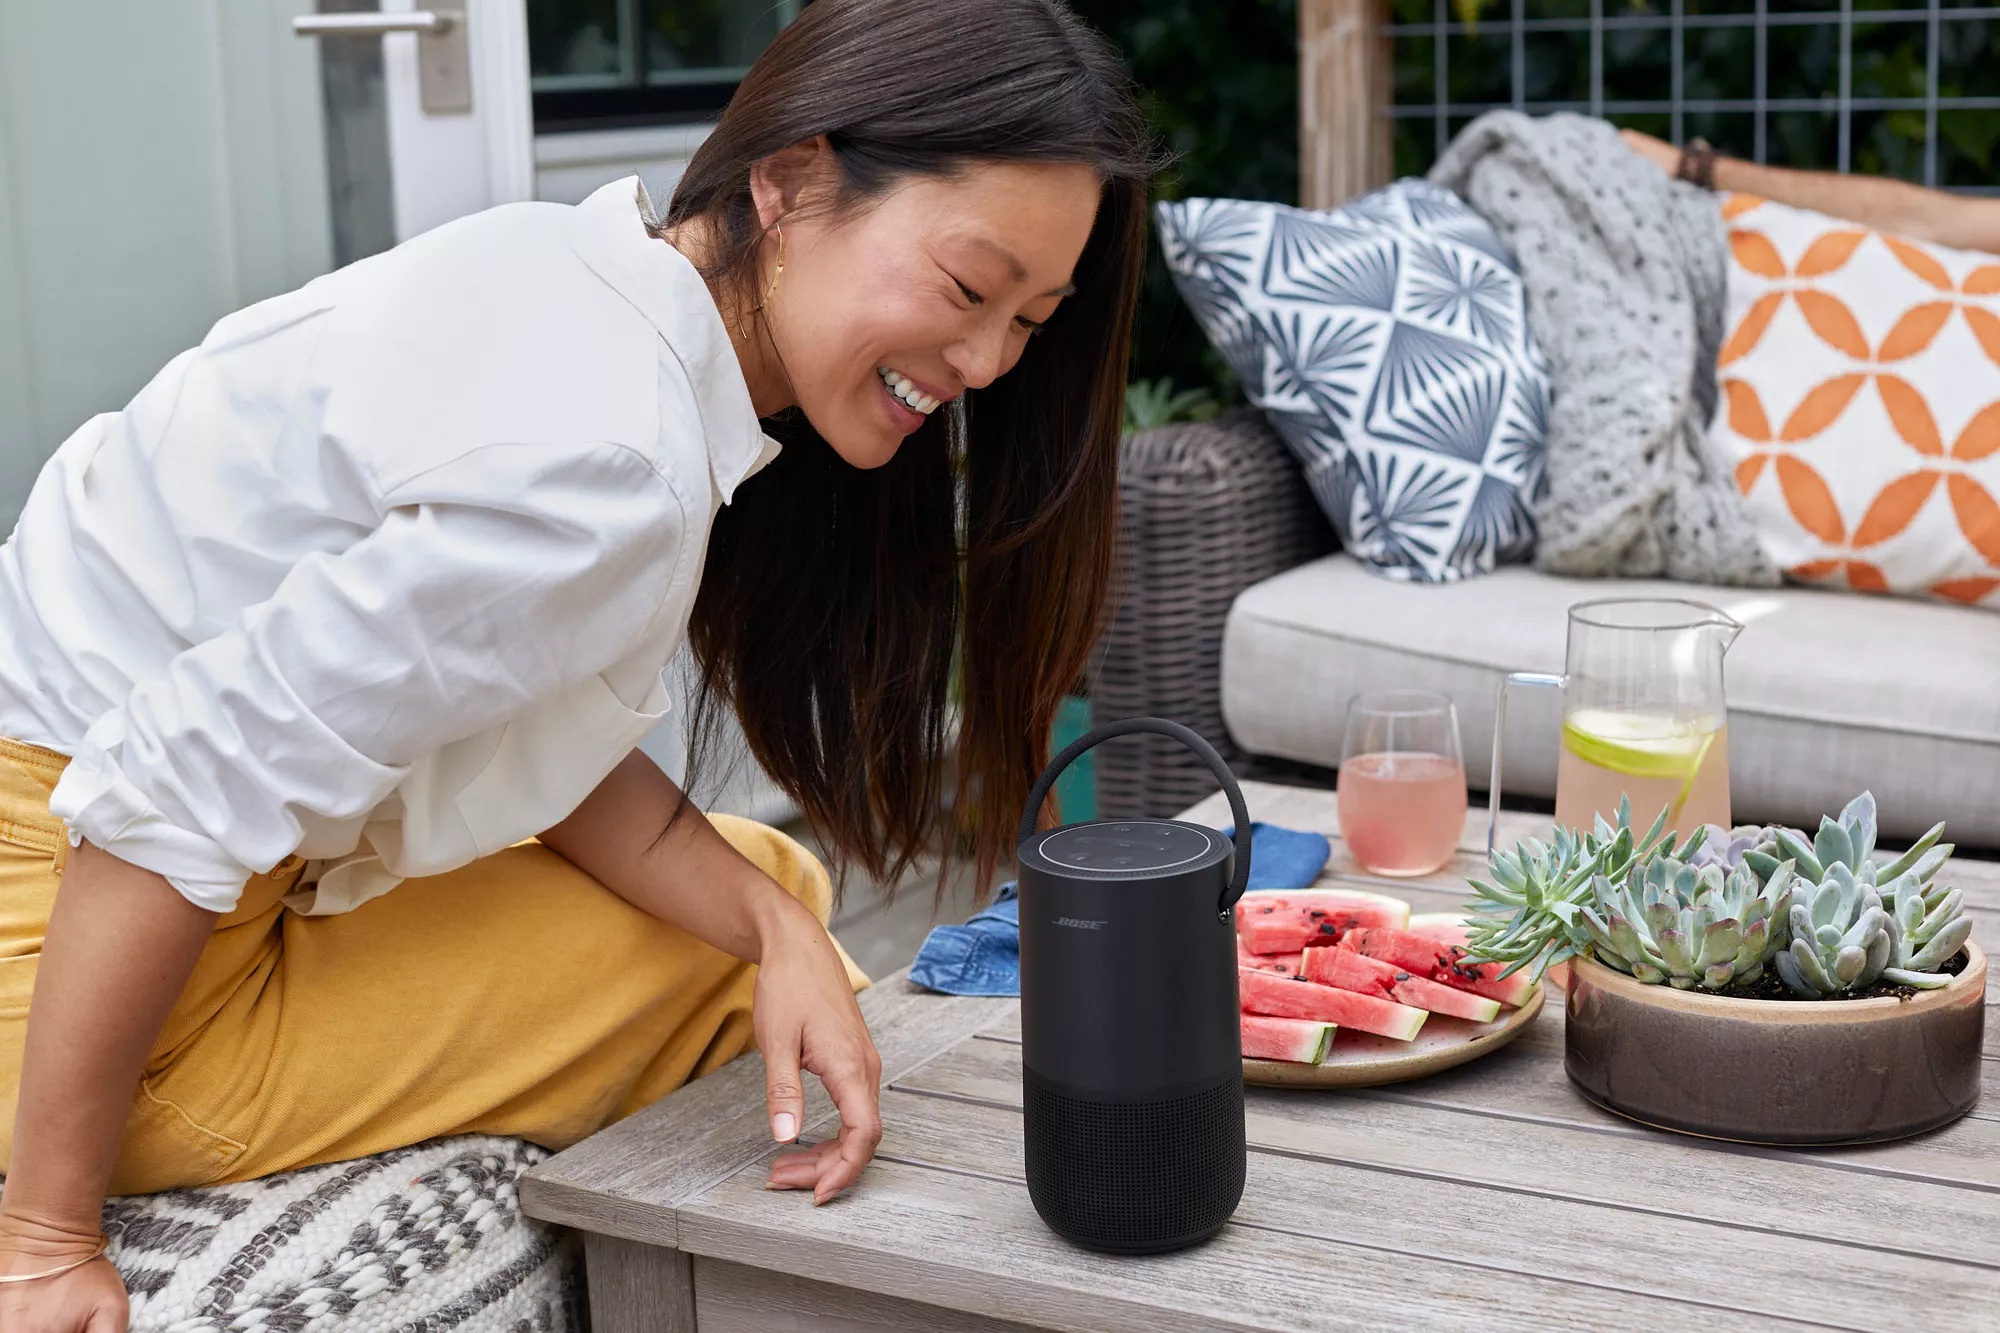 Bose Portable Home Speaker: un altavoz con Alexa y Assistant que no  necesita cables